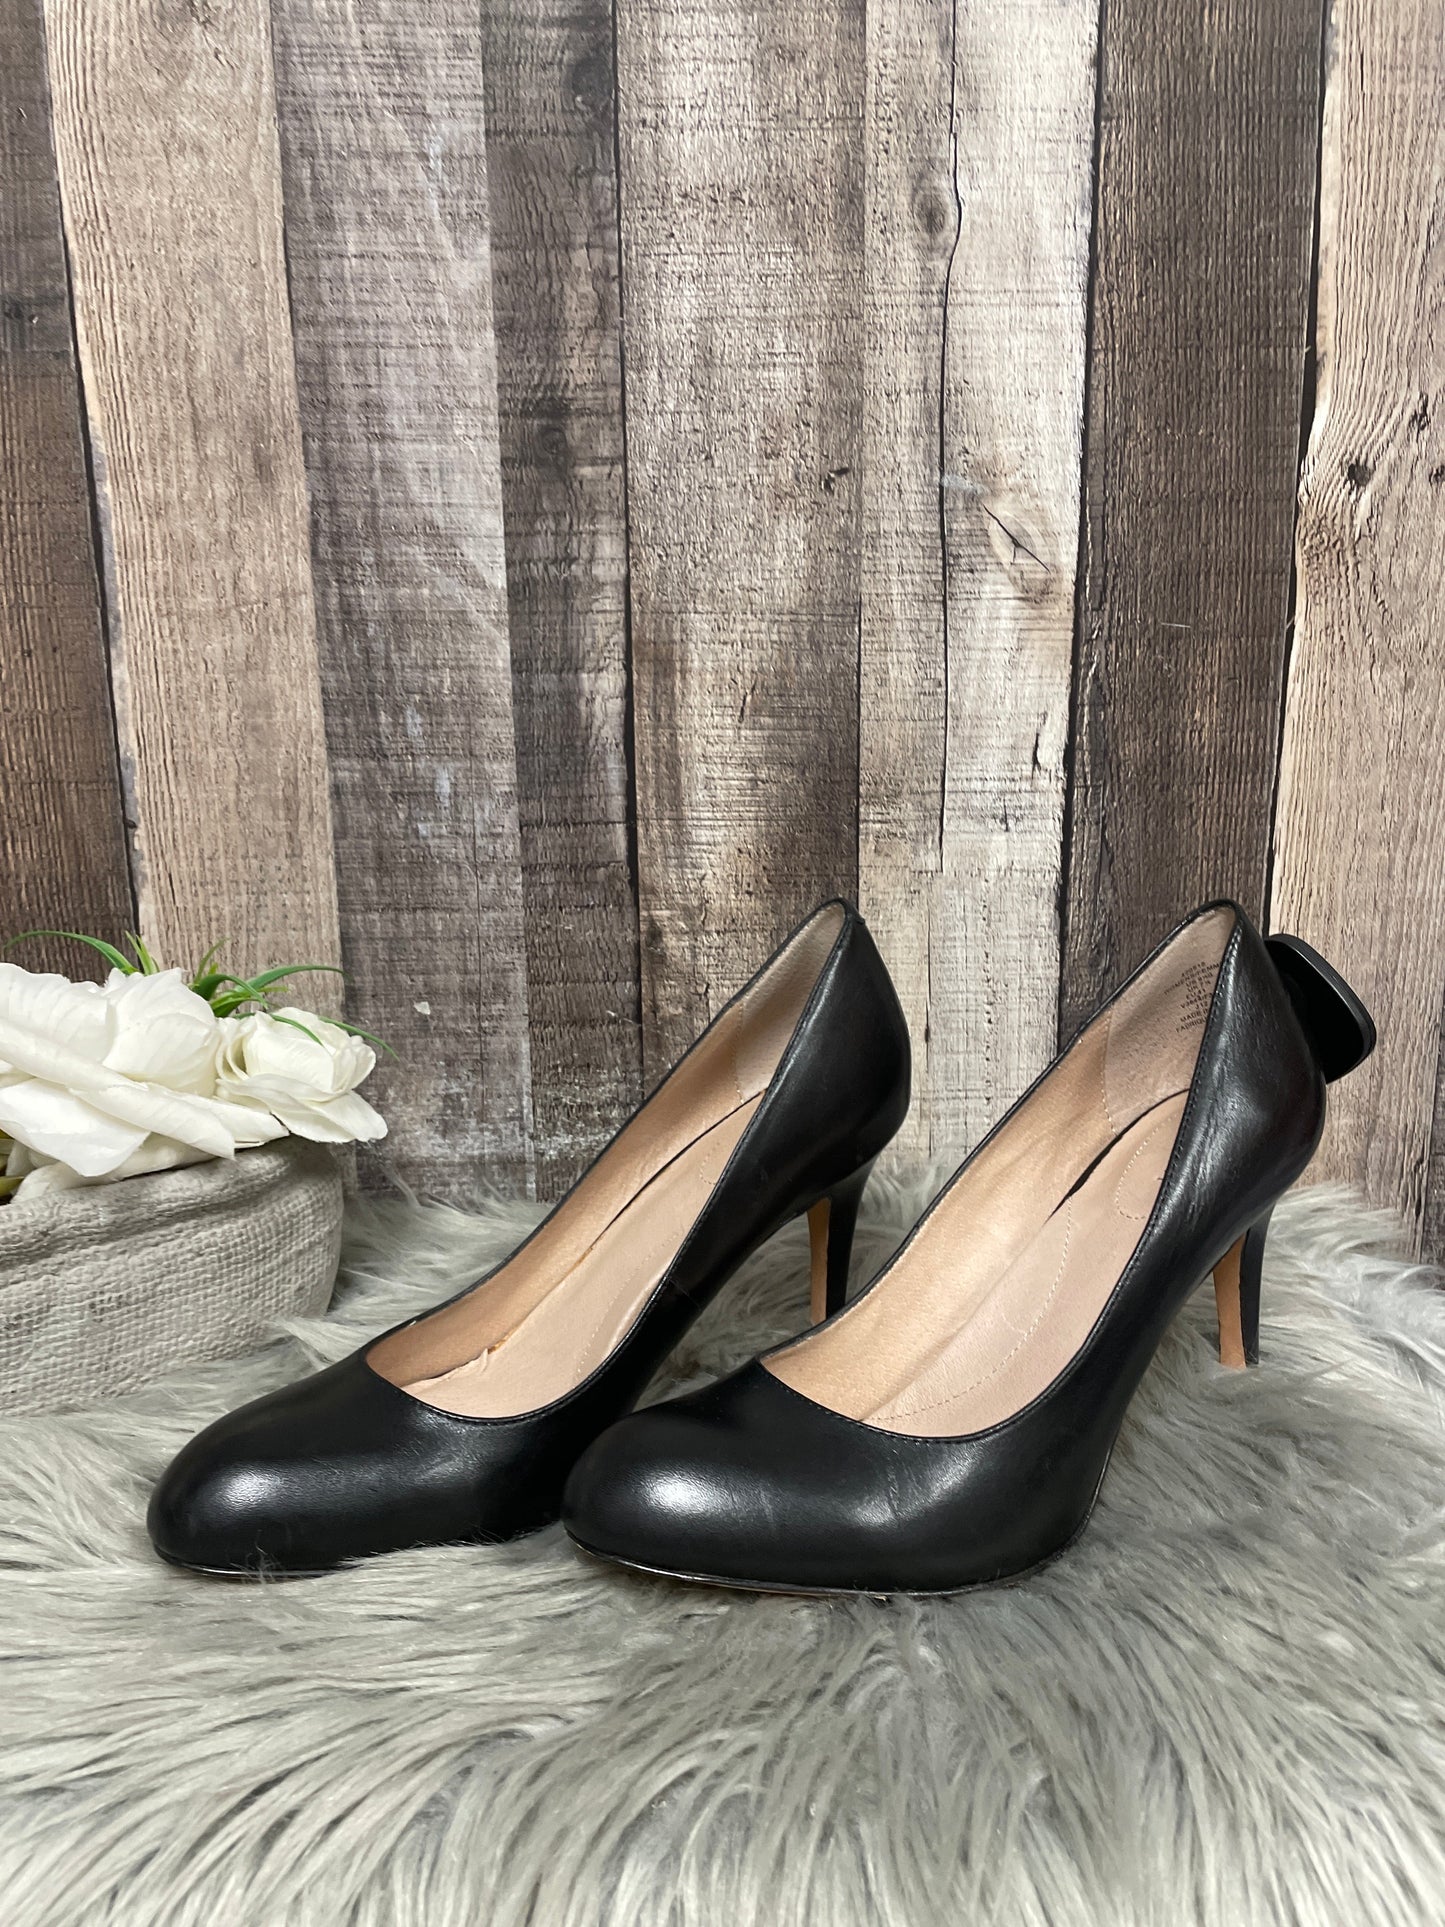 Black Shoes Heels Stiletto Lands End, Size 9.5